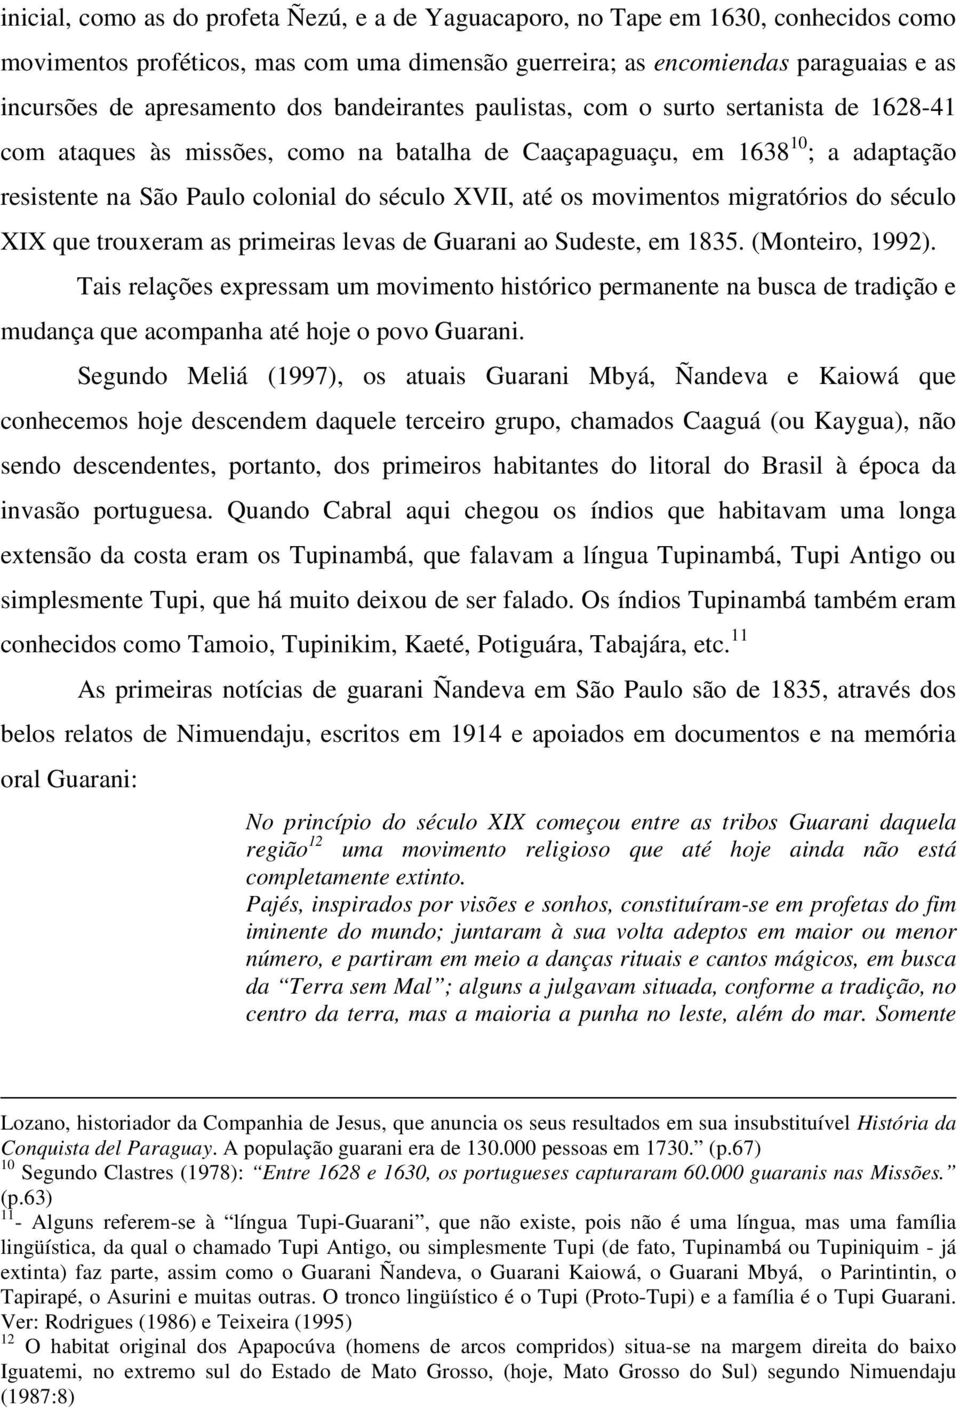 movimentos migratórios do século XIX que trouxeram as primeiras levas de Guarani ao Sudeste, em 1835. (Monteiro, 1992).